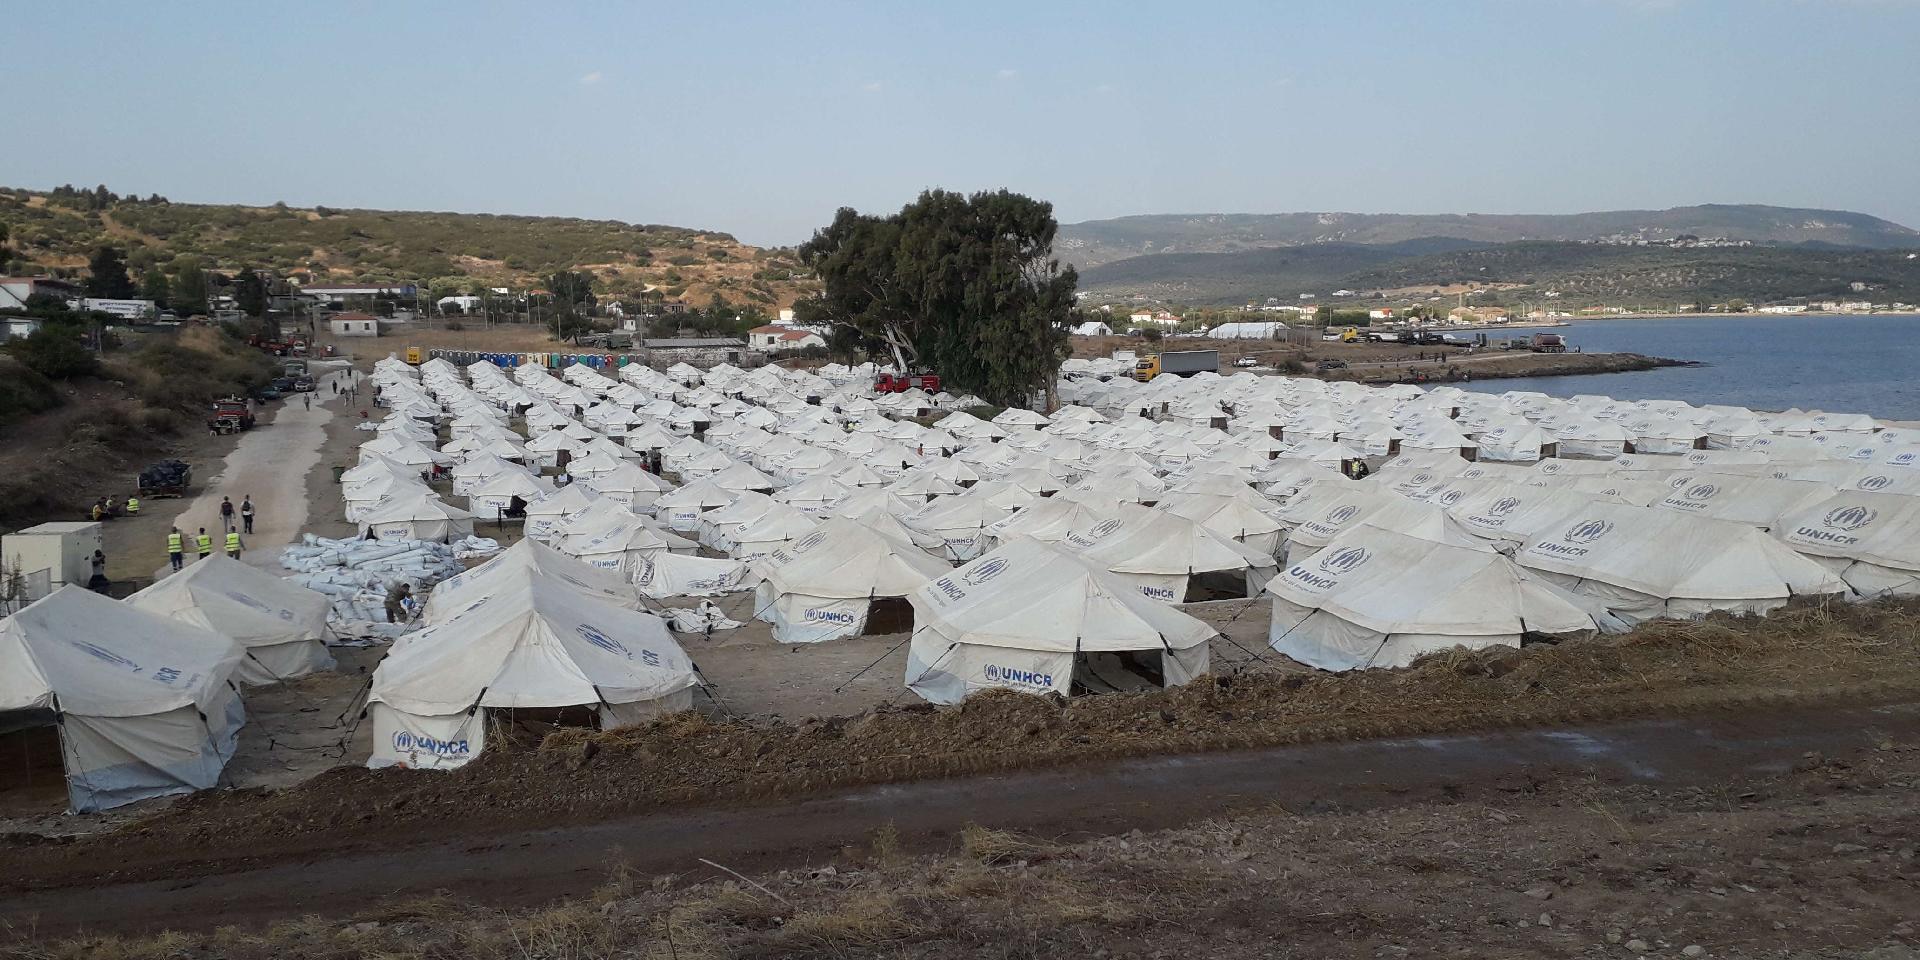 De nombreuses tentes forment ensemble un campement directement sur le bord de mer de l'île de Lesbos.